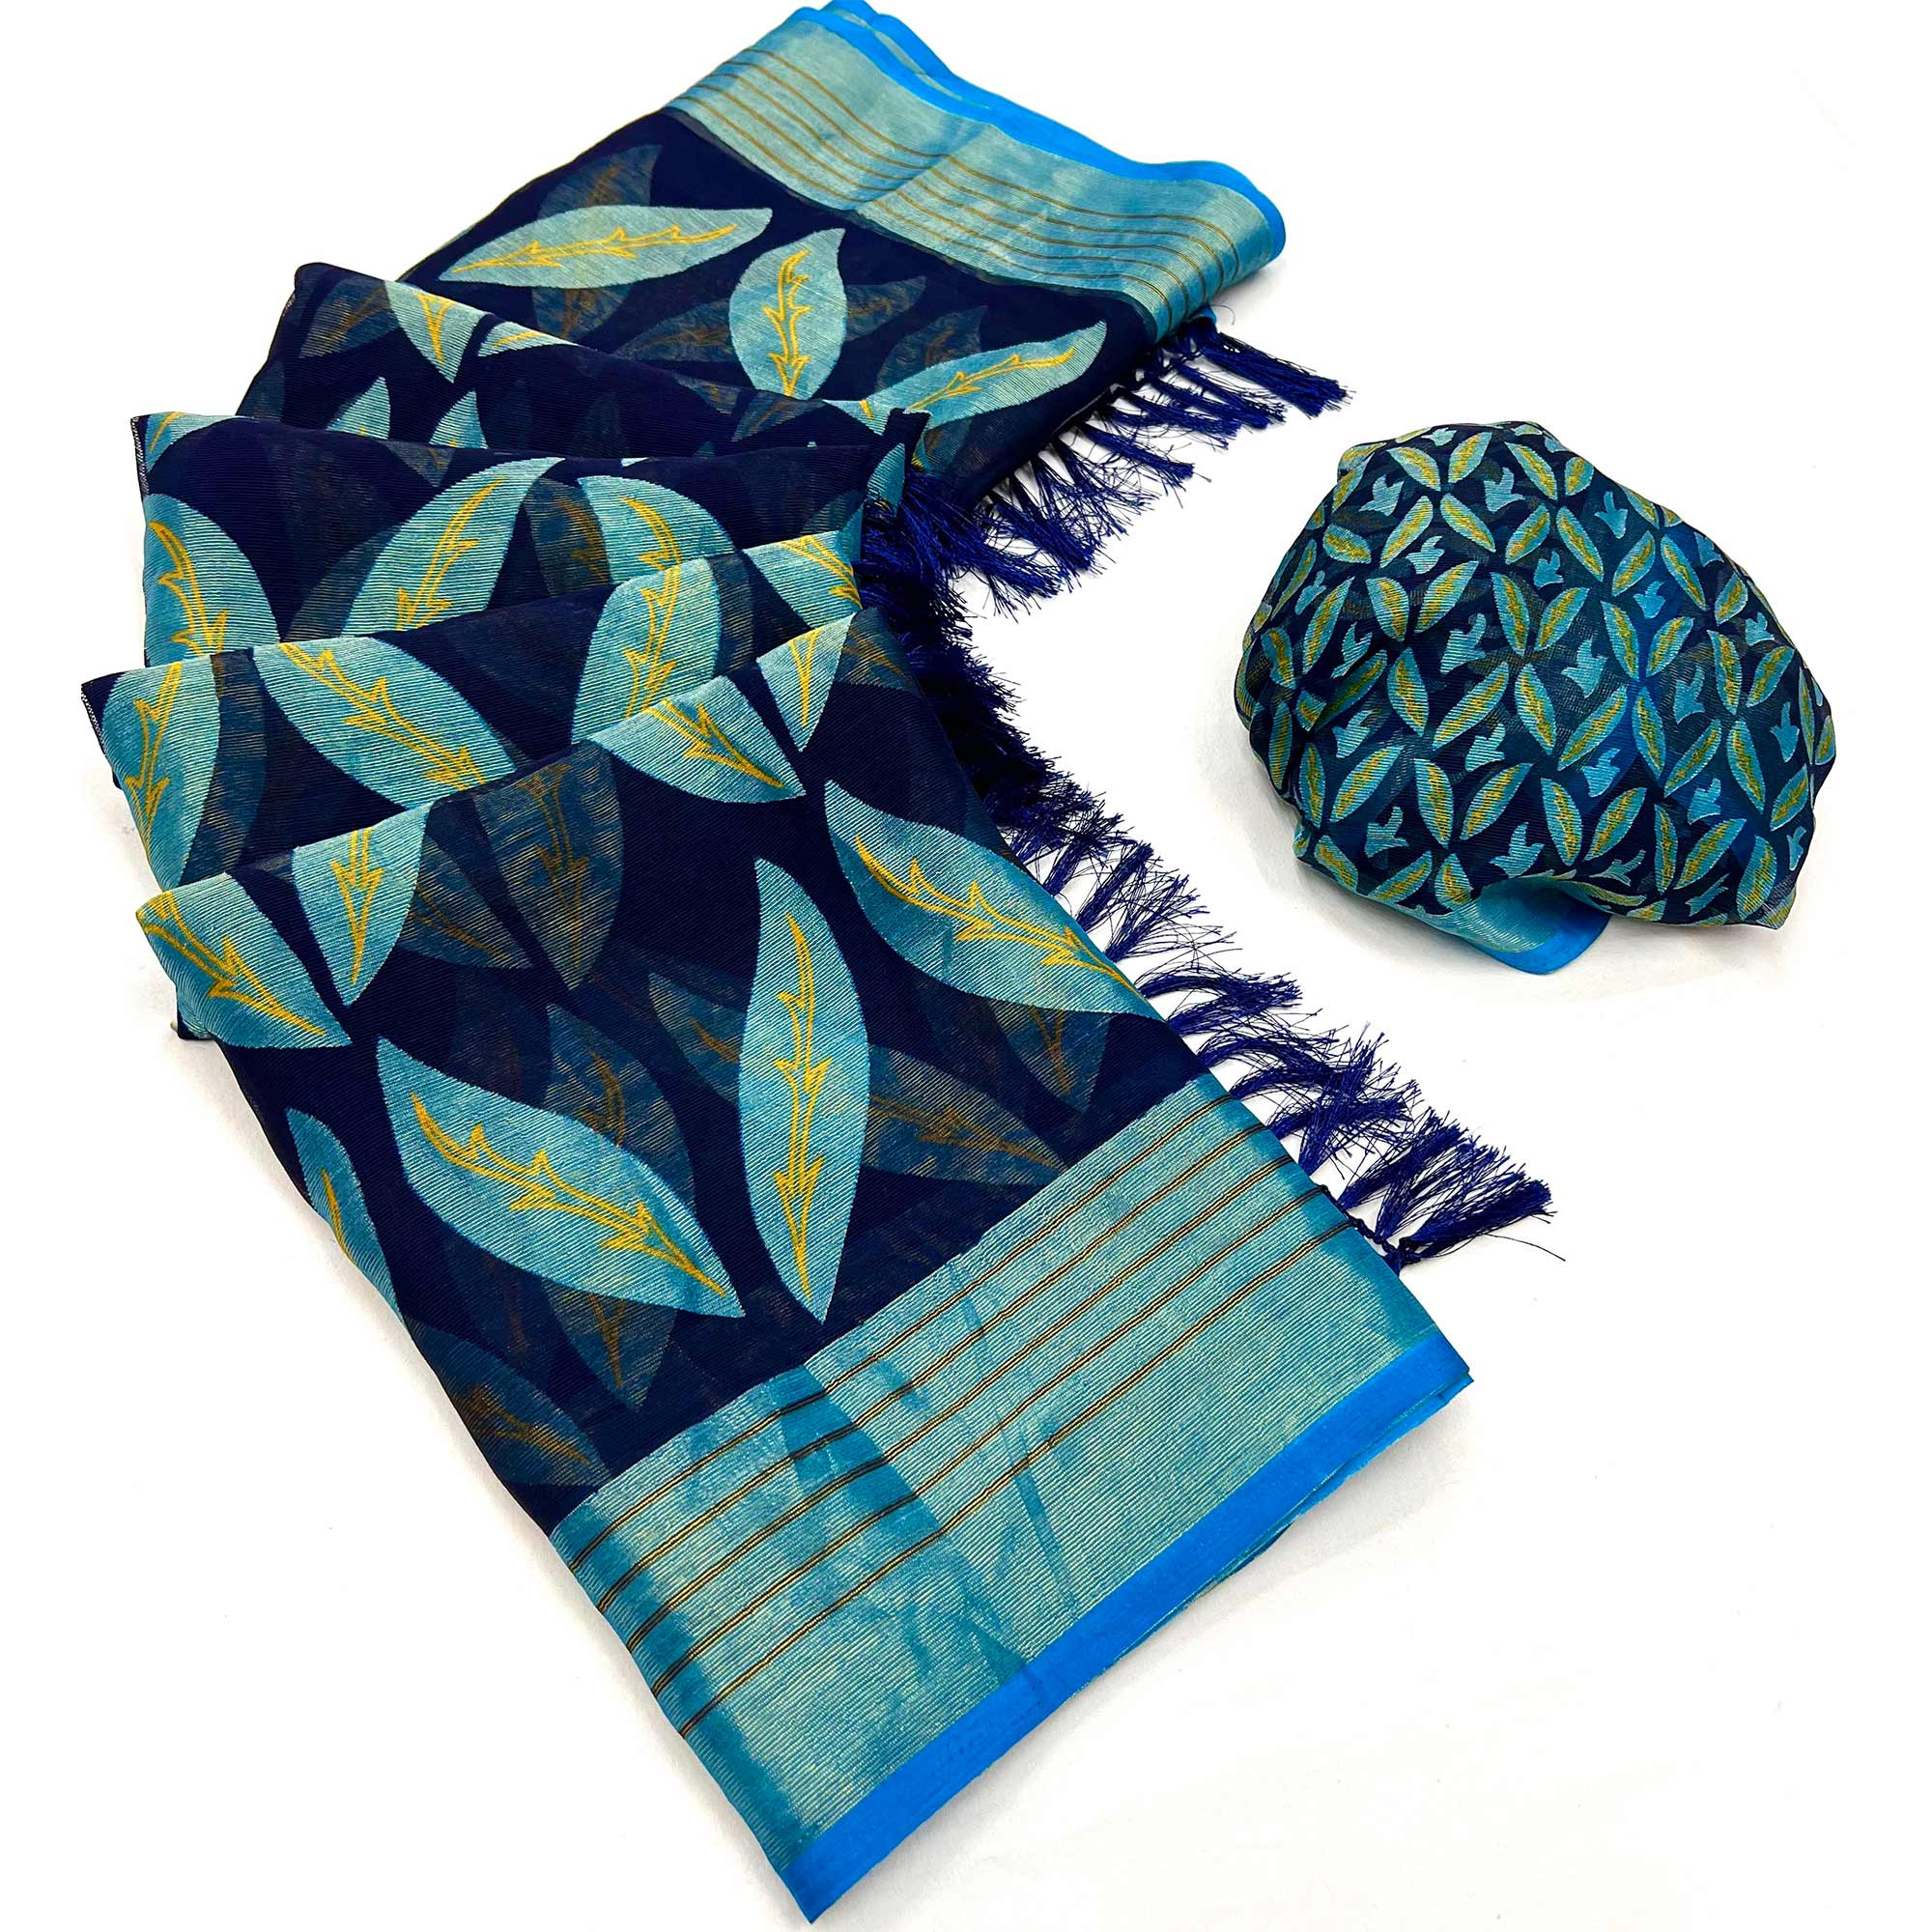 Blue Floral Digital Printed Georgette Saree With Tassels